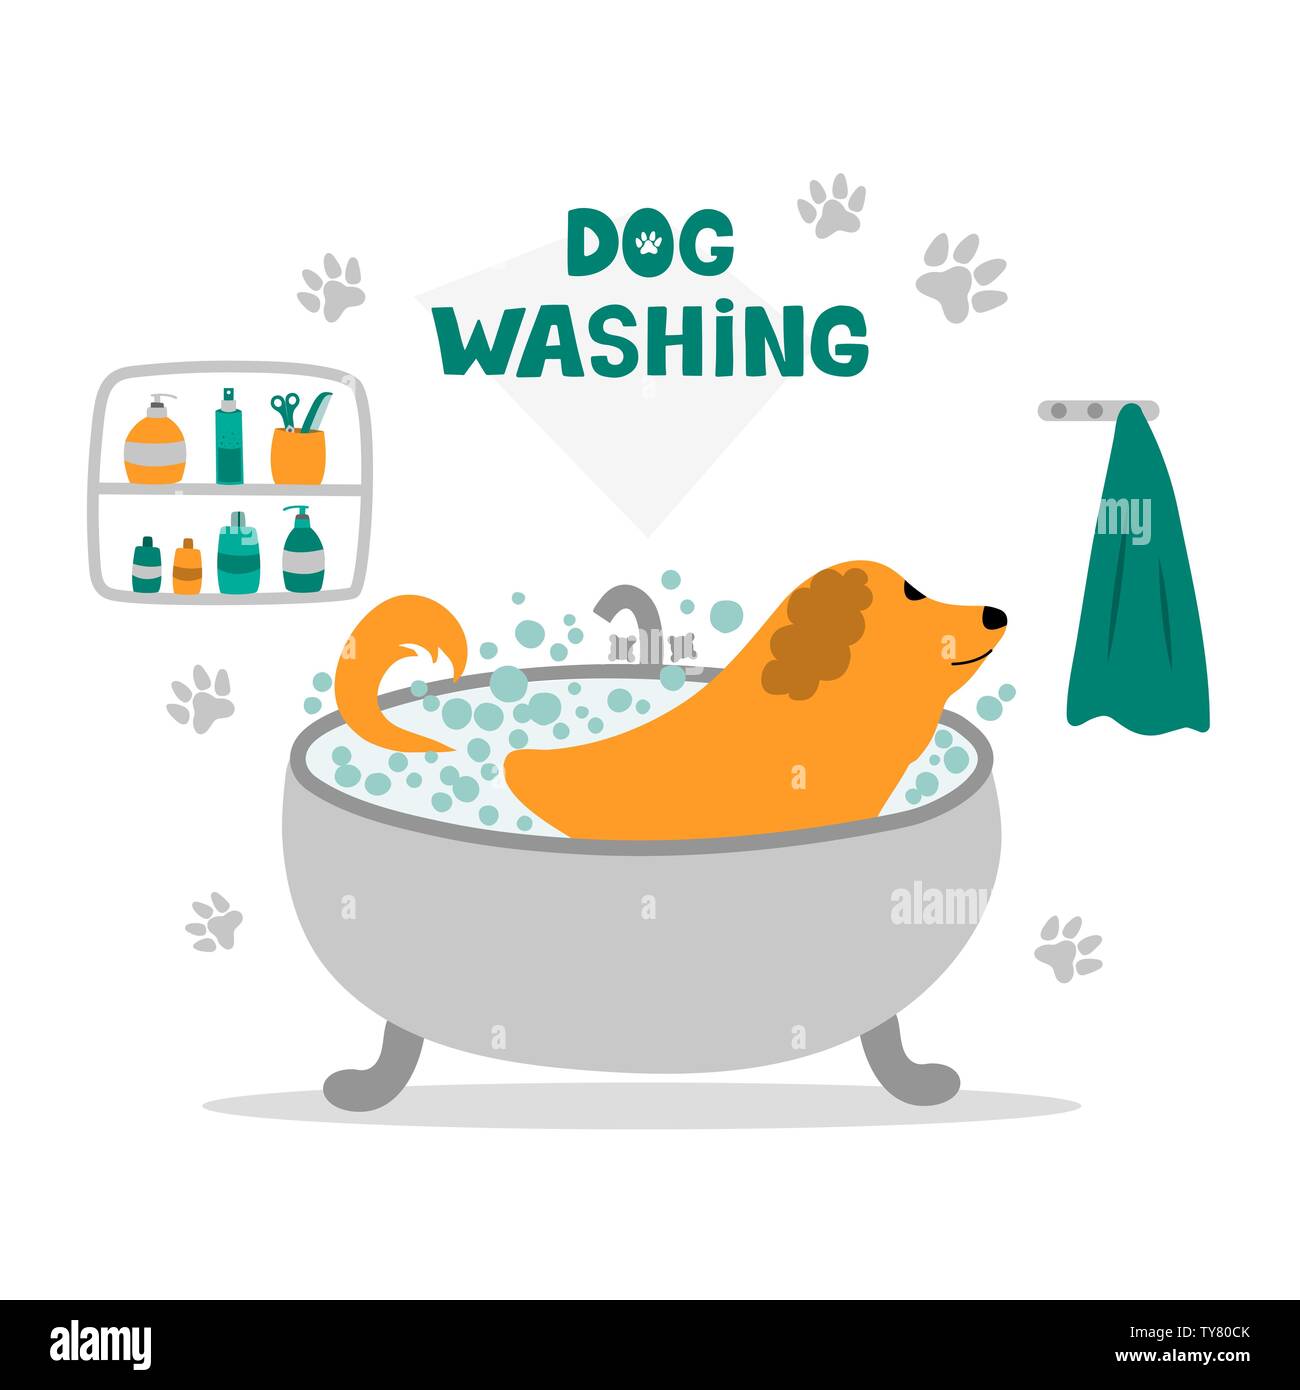 A dog taking a bath. Dog washing. Dog grooming. Stock Vector